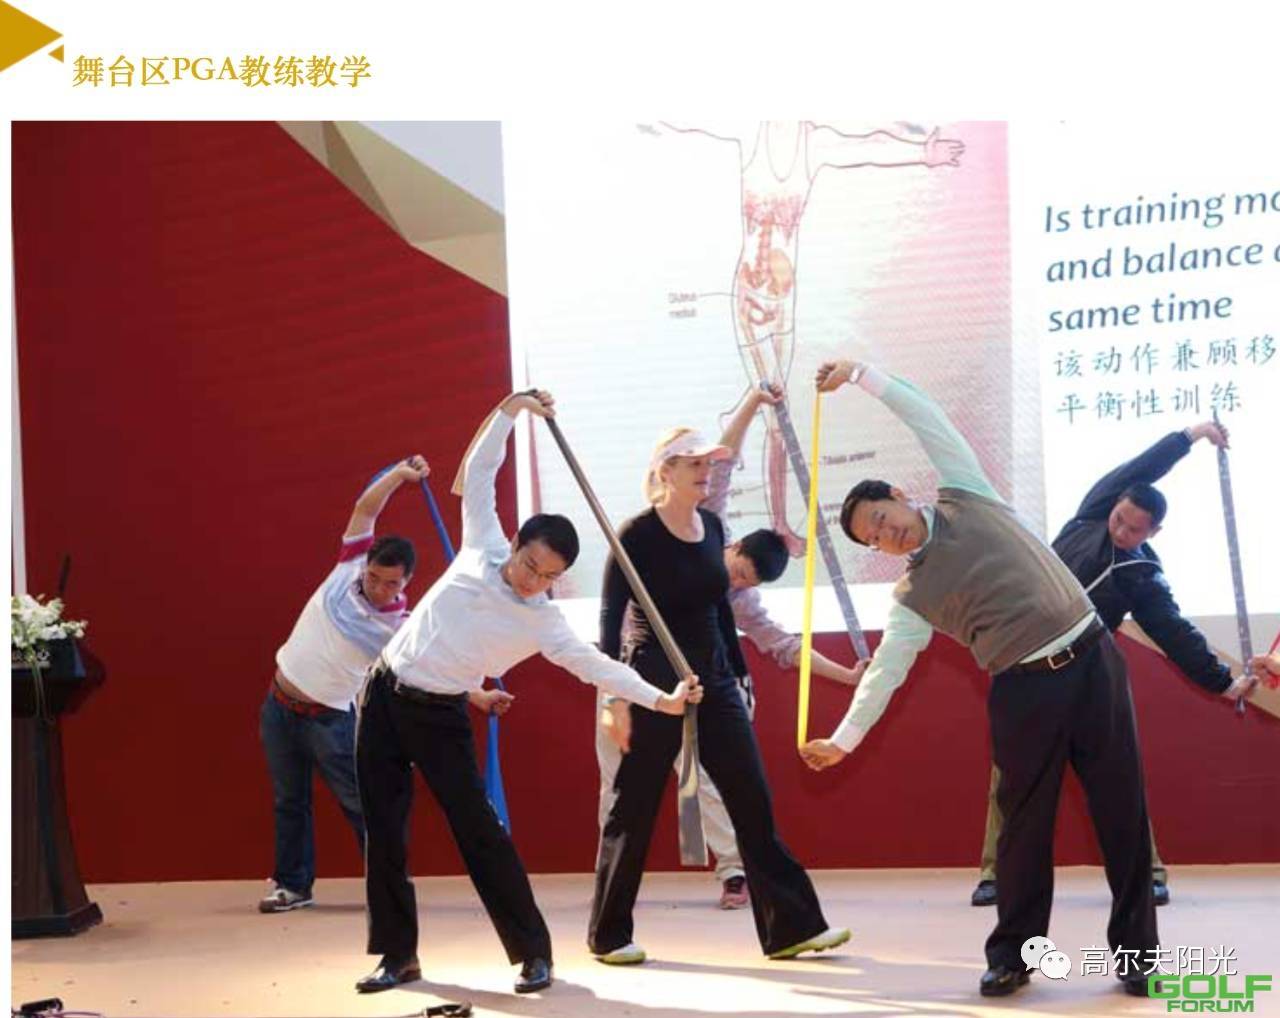 我无比期待本月举行的2017年上海高尔夫博览会！